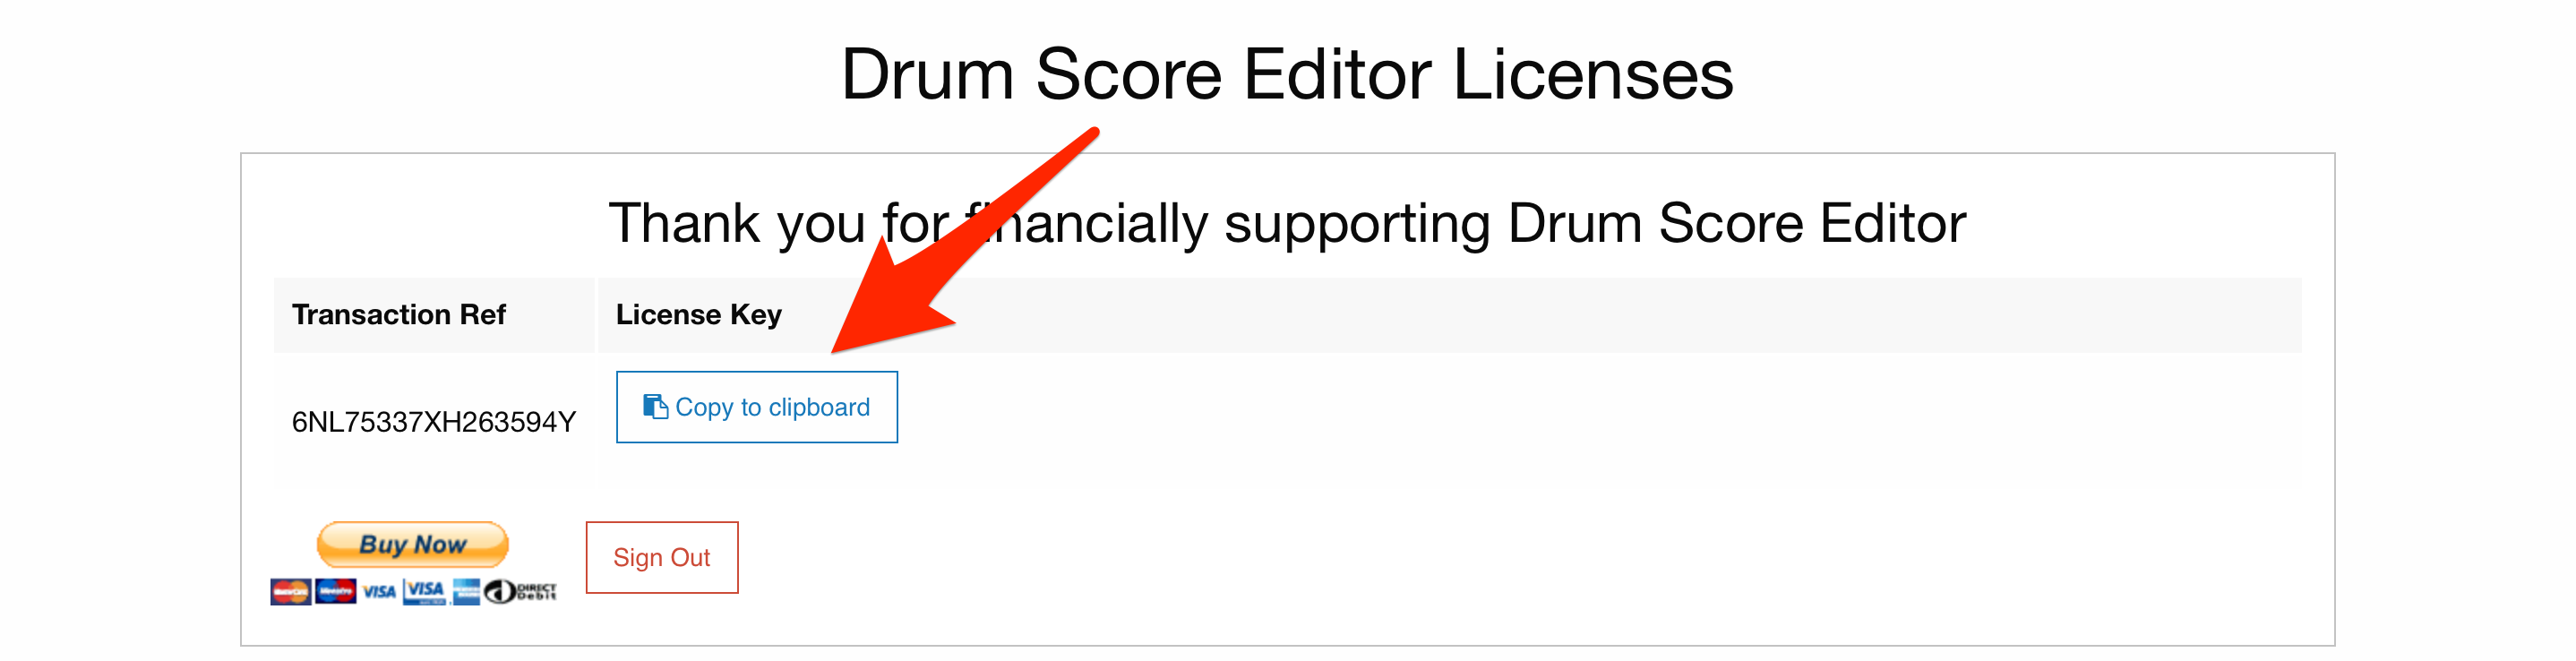 Drum Score Editor - Documentation